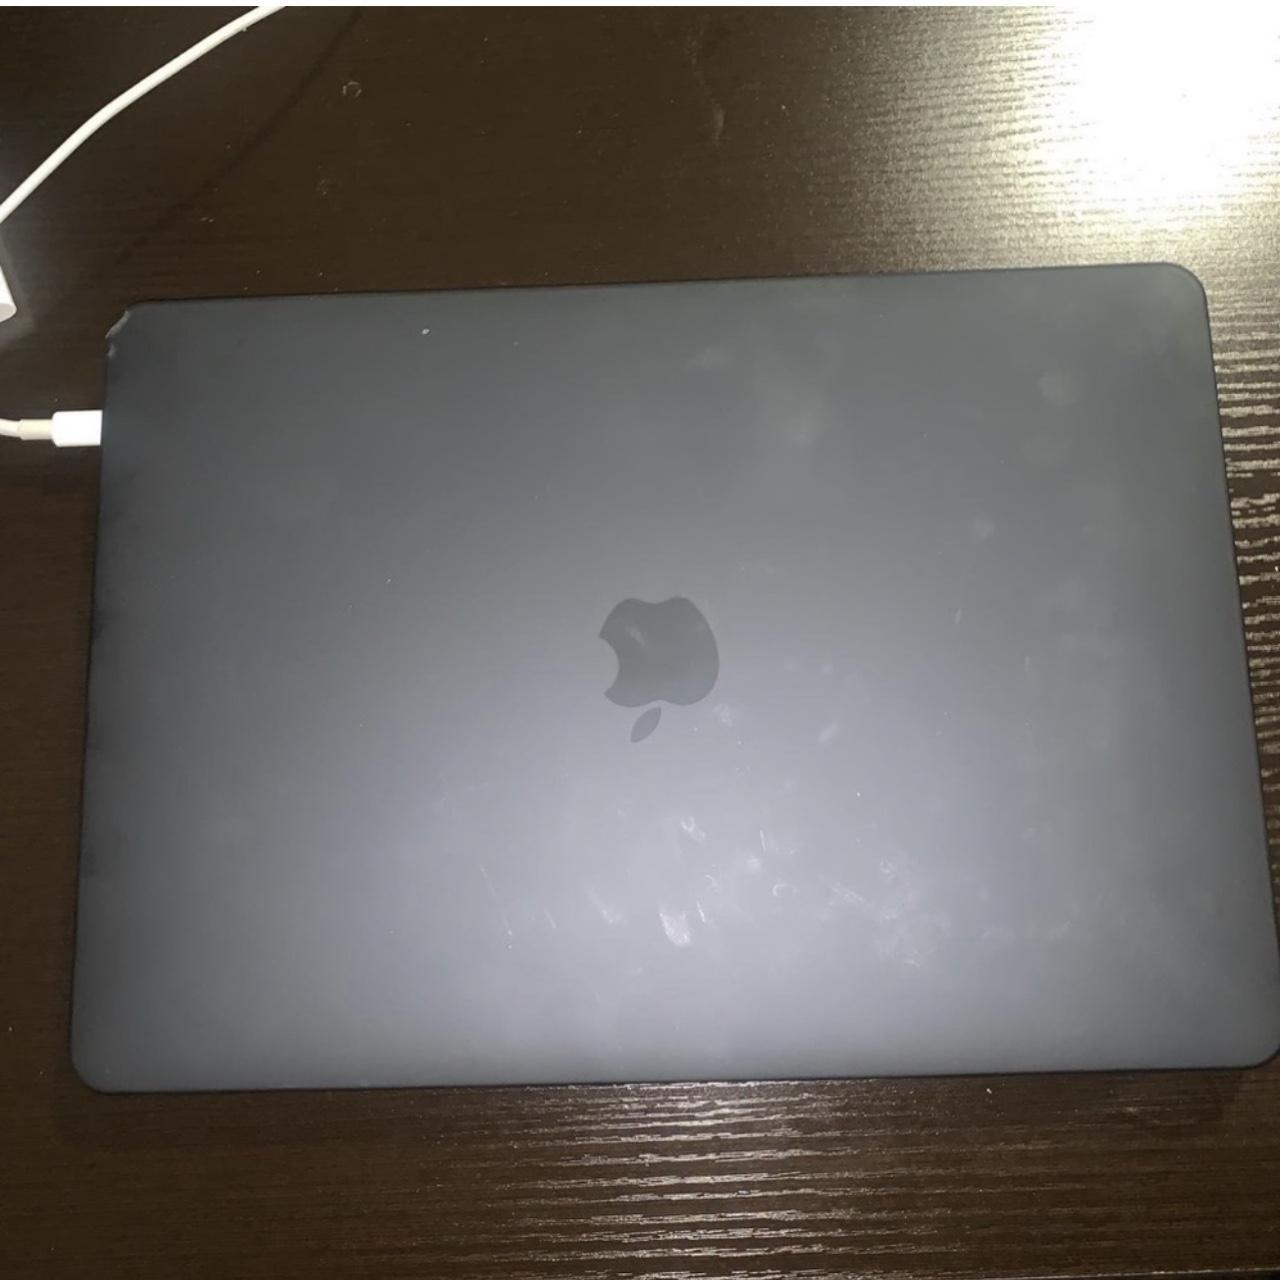 MacOS Big Sur (MacBook pro) 13inch, M1 2020 Comes... - Depop